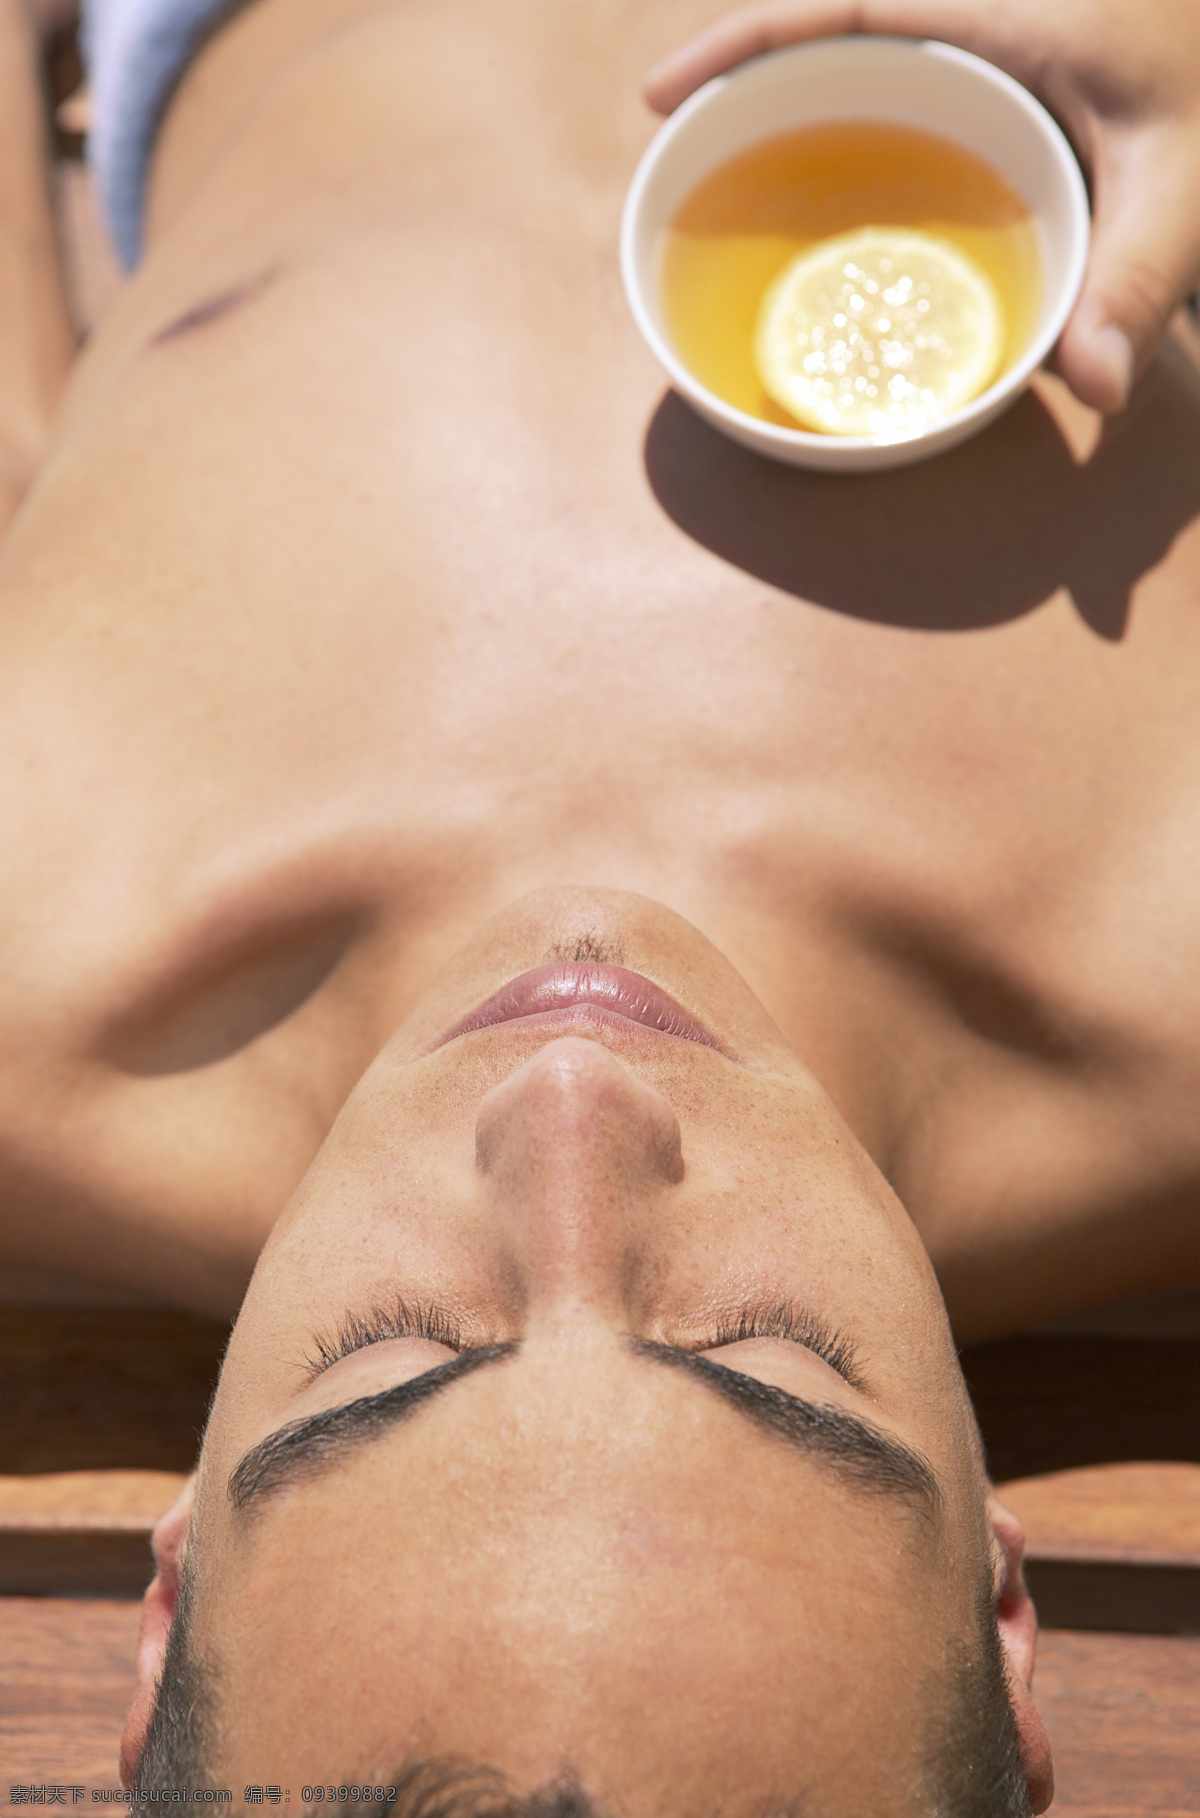 spa 养生 外国 男性 外国男性 男人 spa水疗 柠檬茶 美容美体 护肤 高清图片 生活人物 人物图片